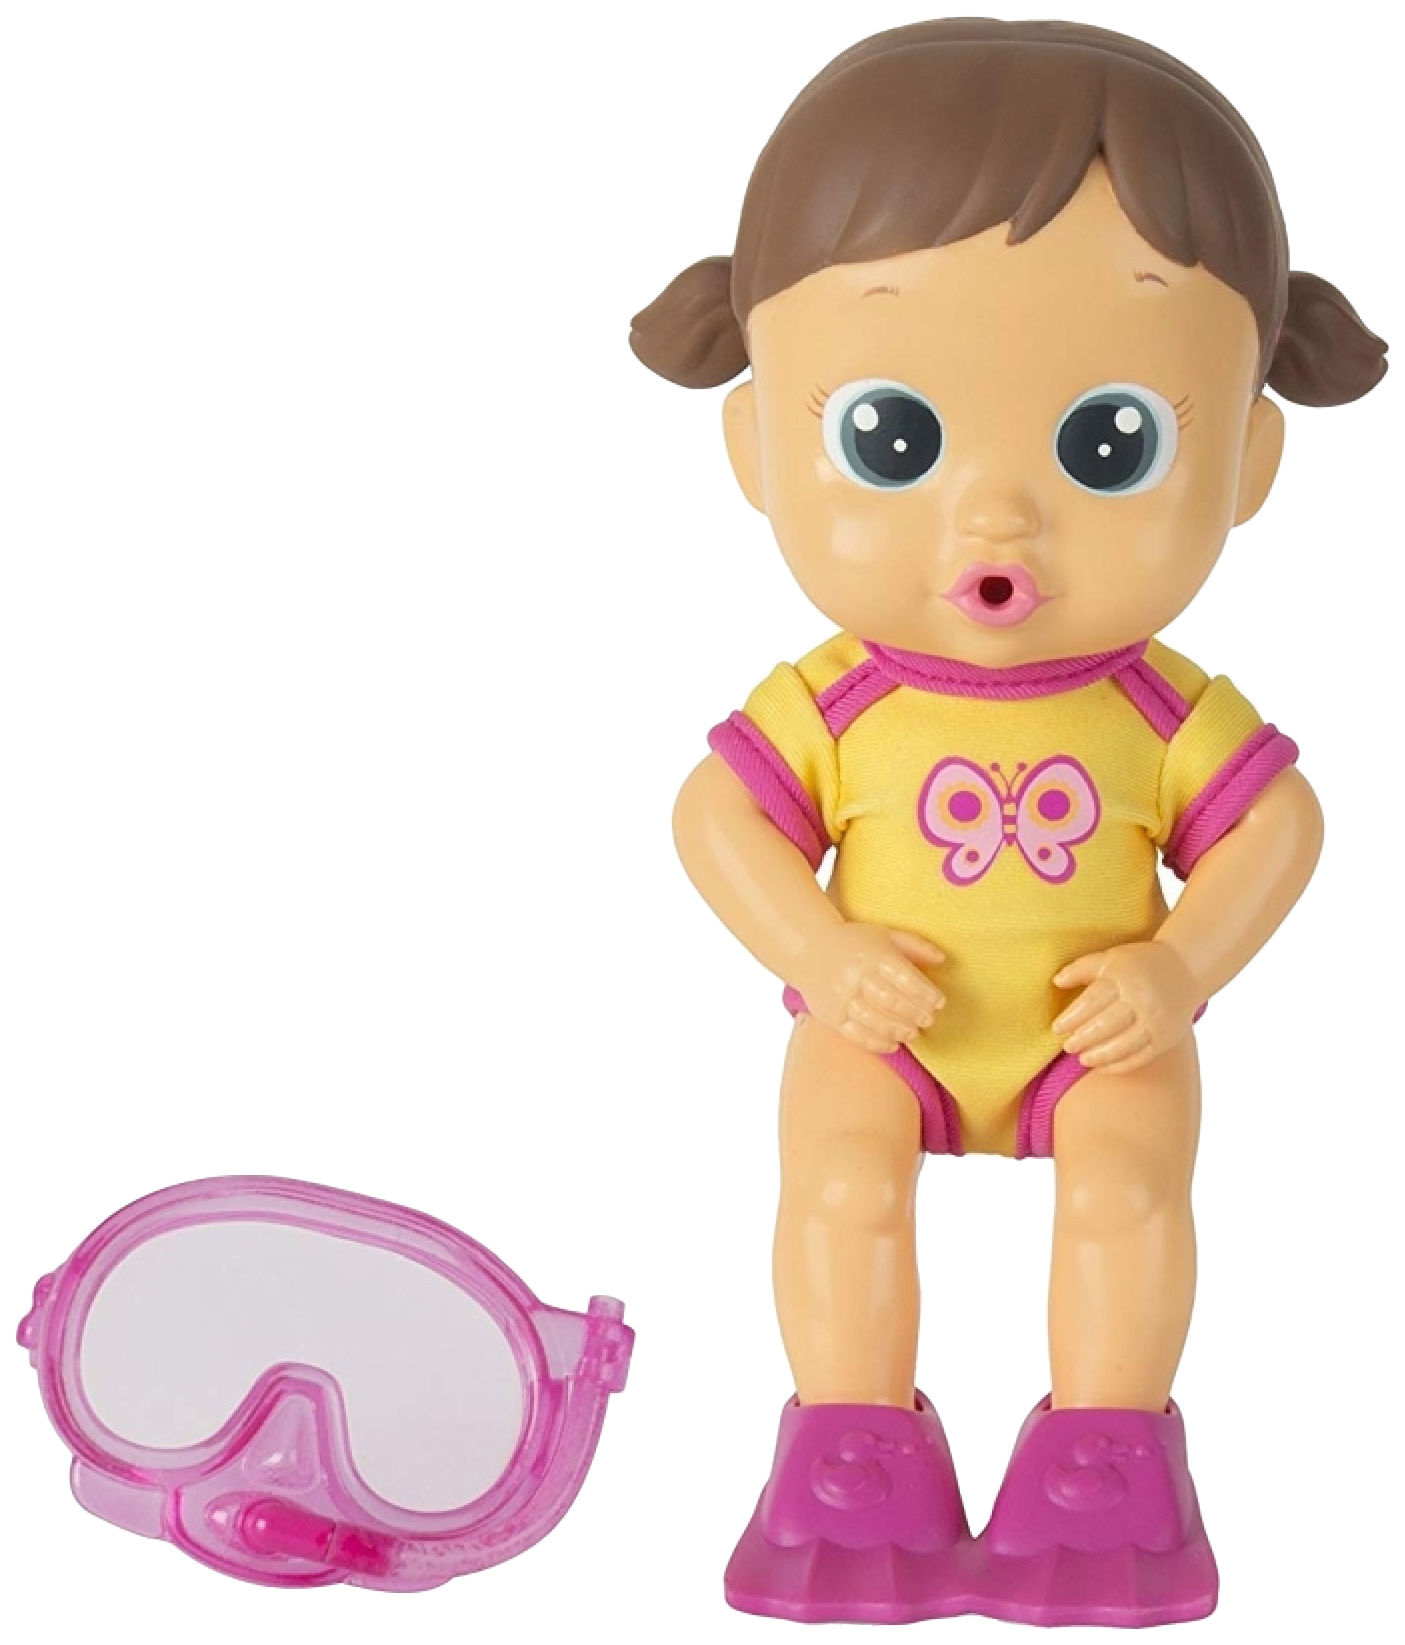 Кукла для купания Bloopies - Лавли, в открытой коробке, 24 см IMC toys кукла для купания bloopies свити в открытой коробке 24 см imc toys